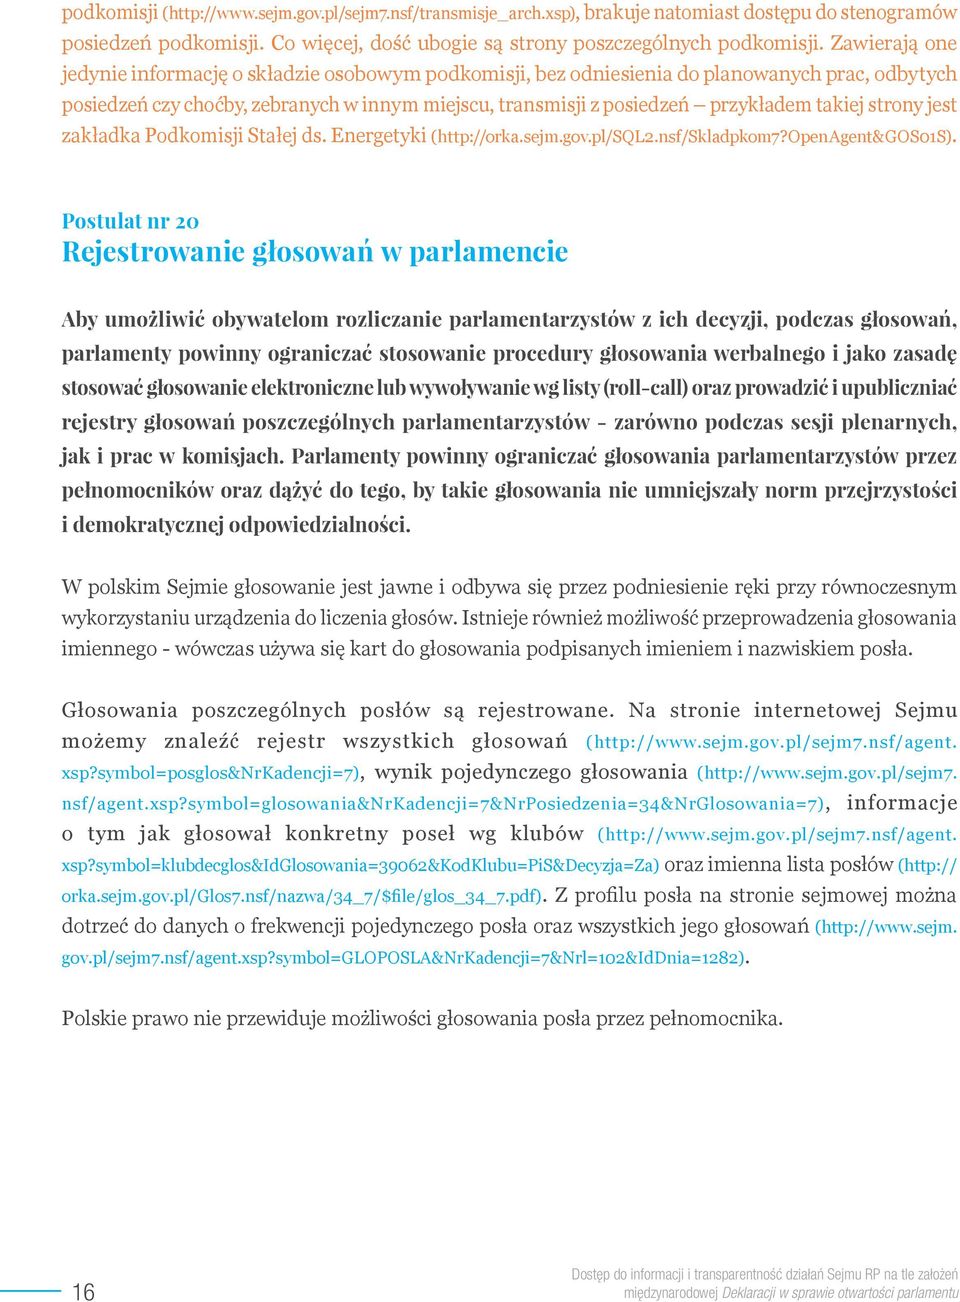 takiej strony jest zakładka Podkomisji Stałej ds. Energetyki (http://orka.sejm.gov.pl/sql2.nsf/skladpkom7?openagent&gos01s).